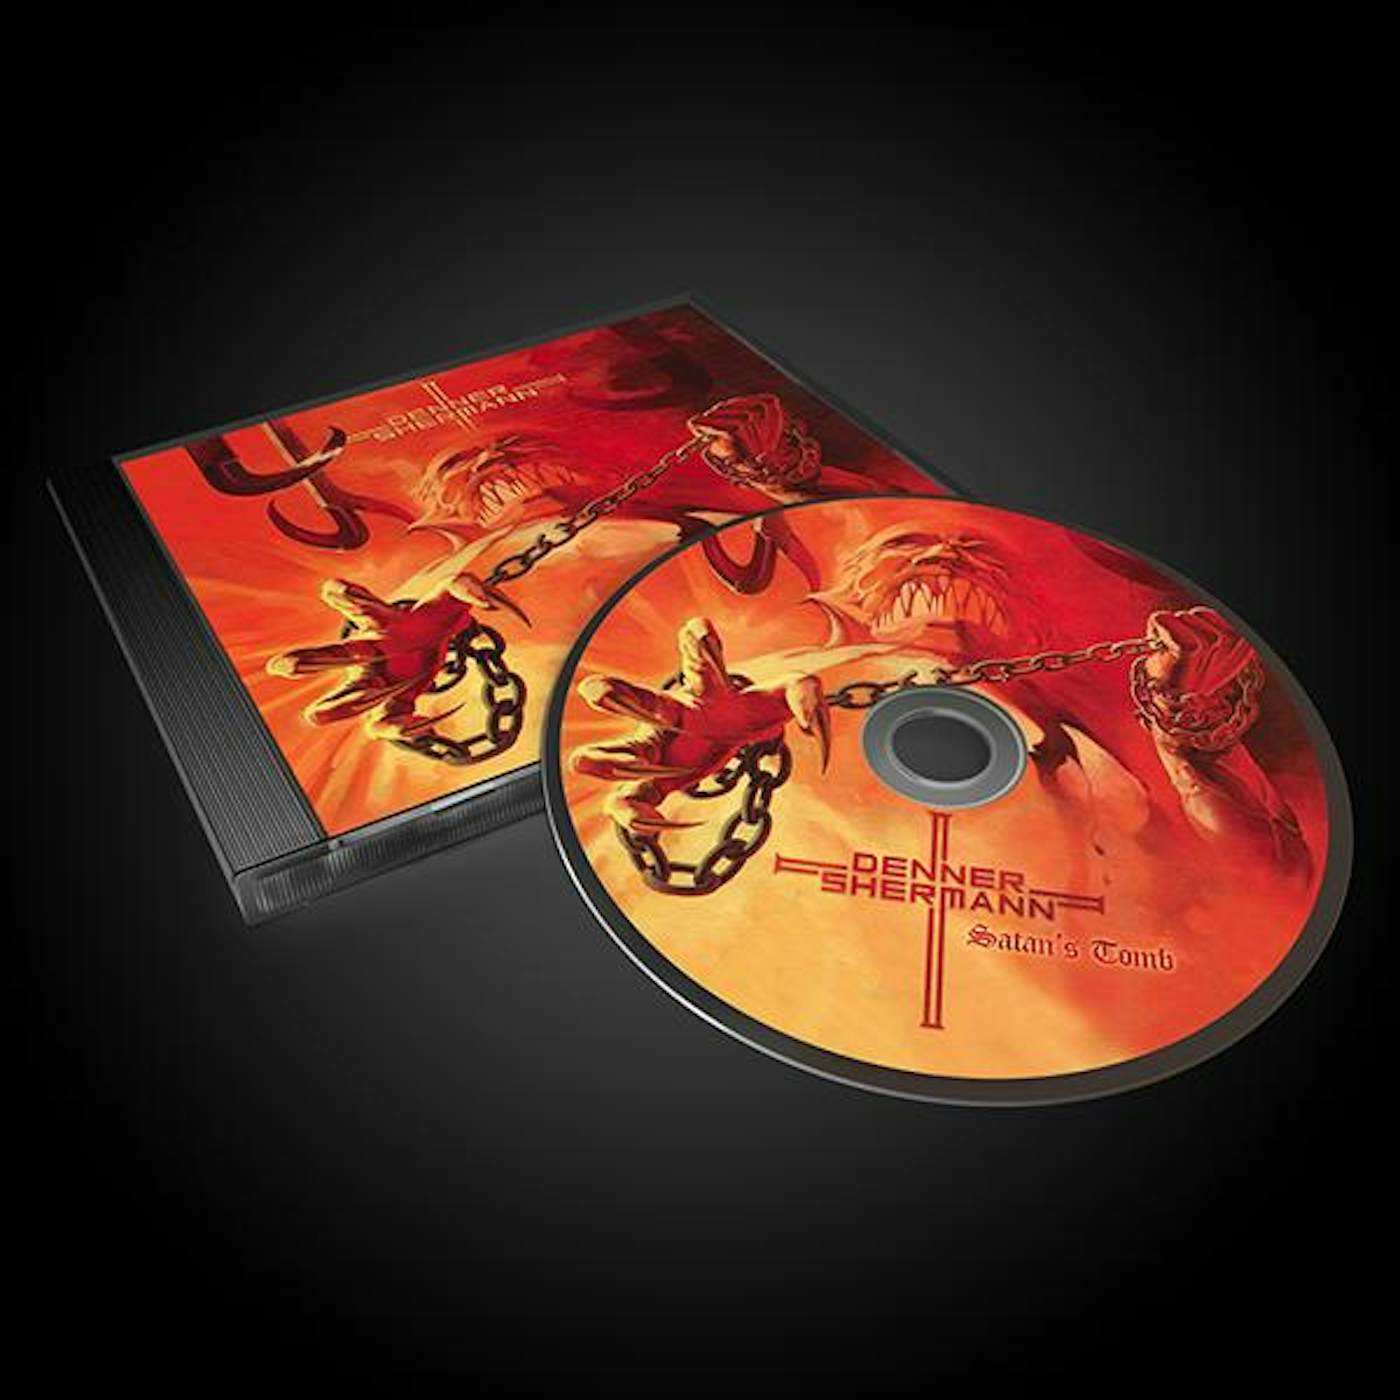 Denner / Shermann "Satan's Tomb" CD